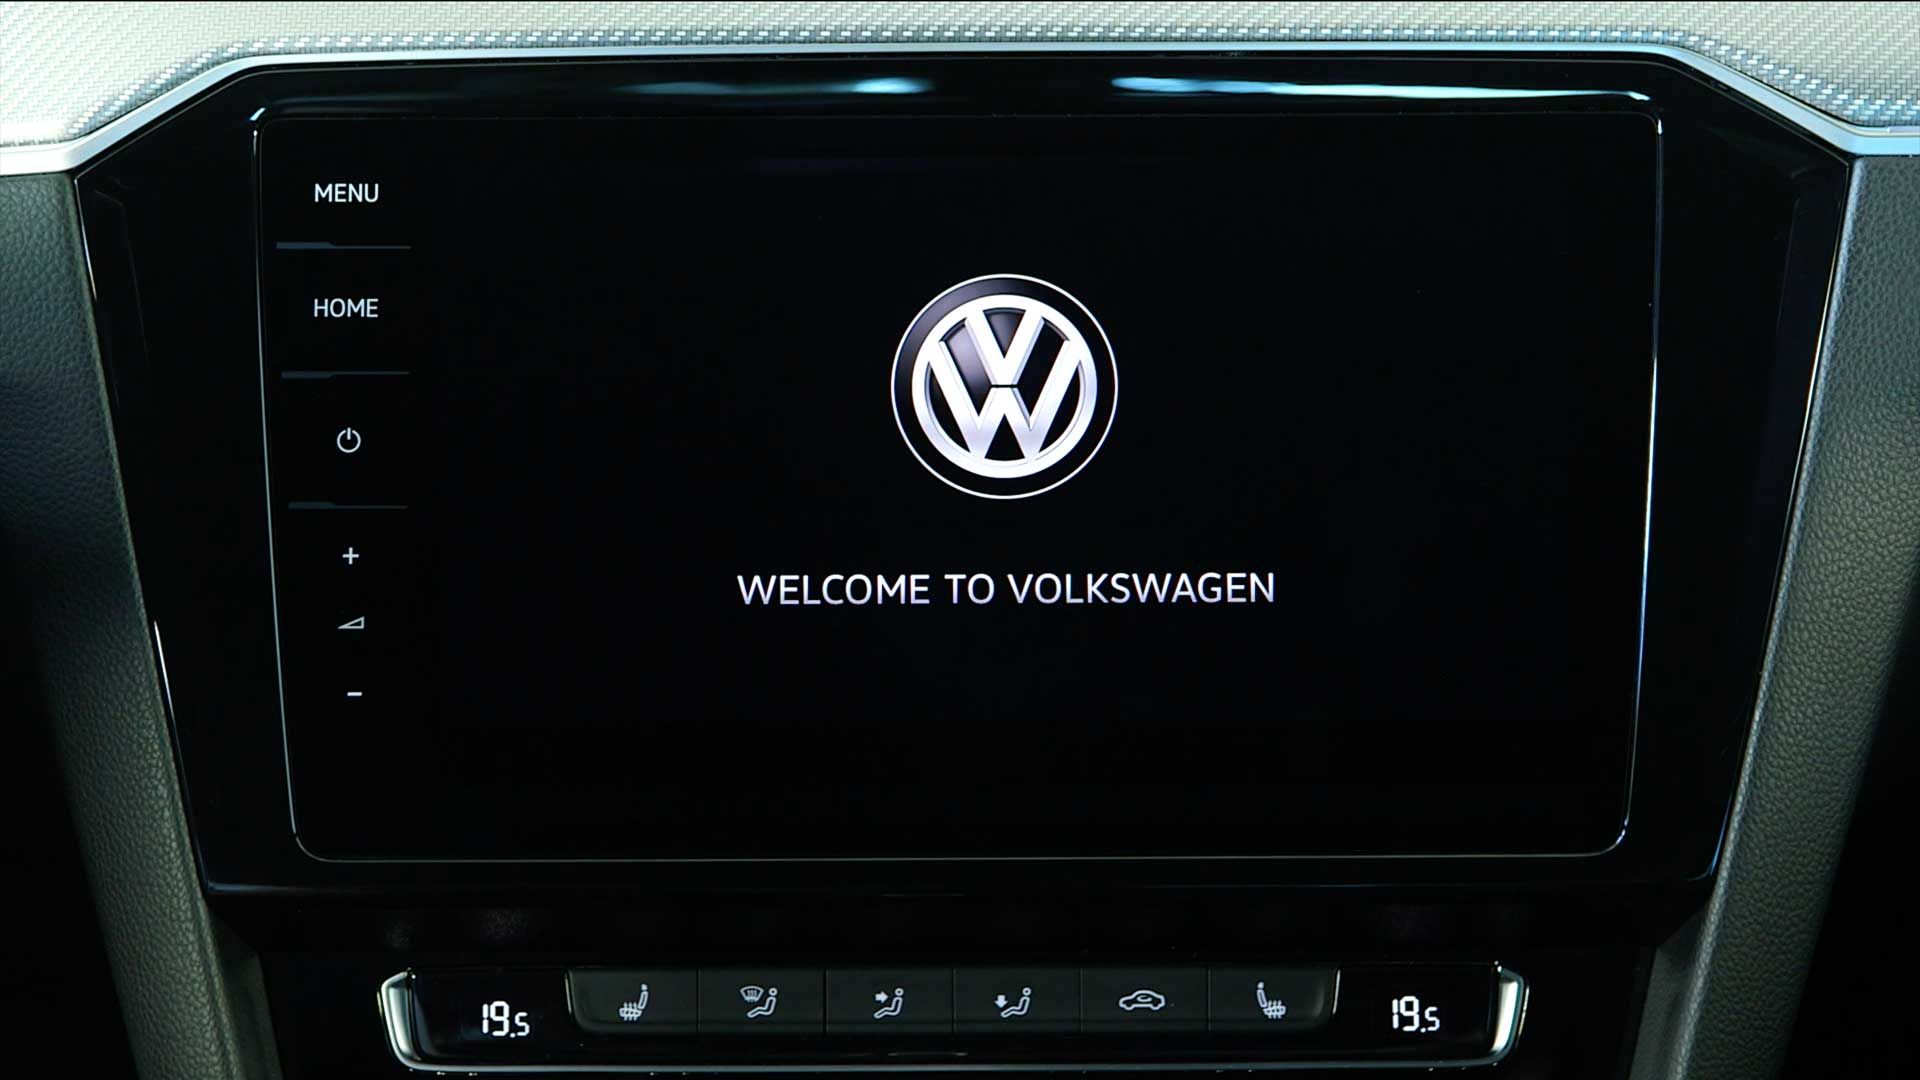 Welcome Bildschirm im Volkswagen Fahrzeug